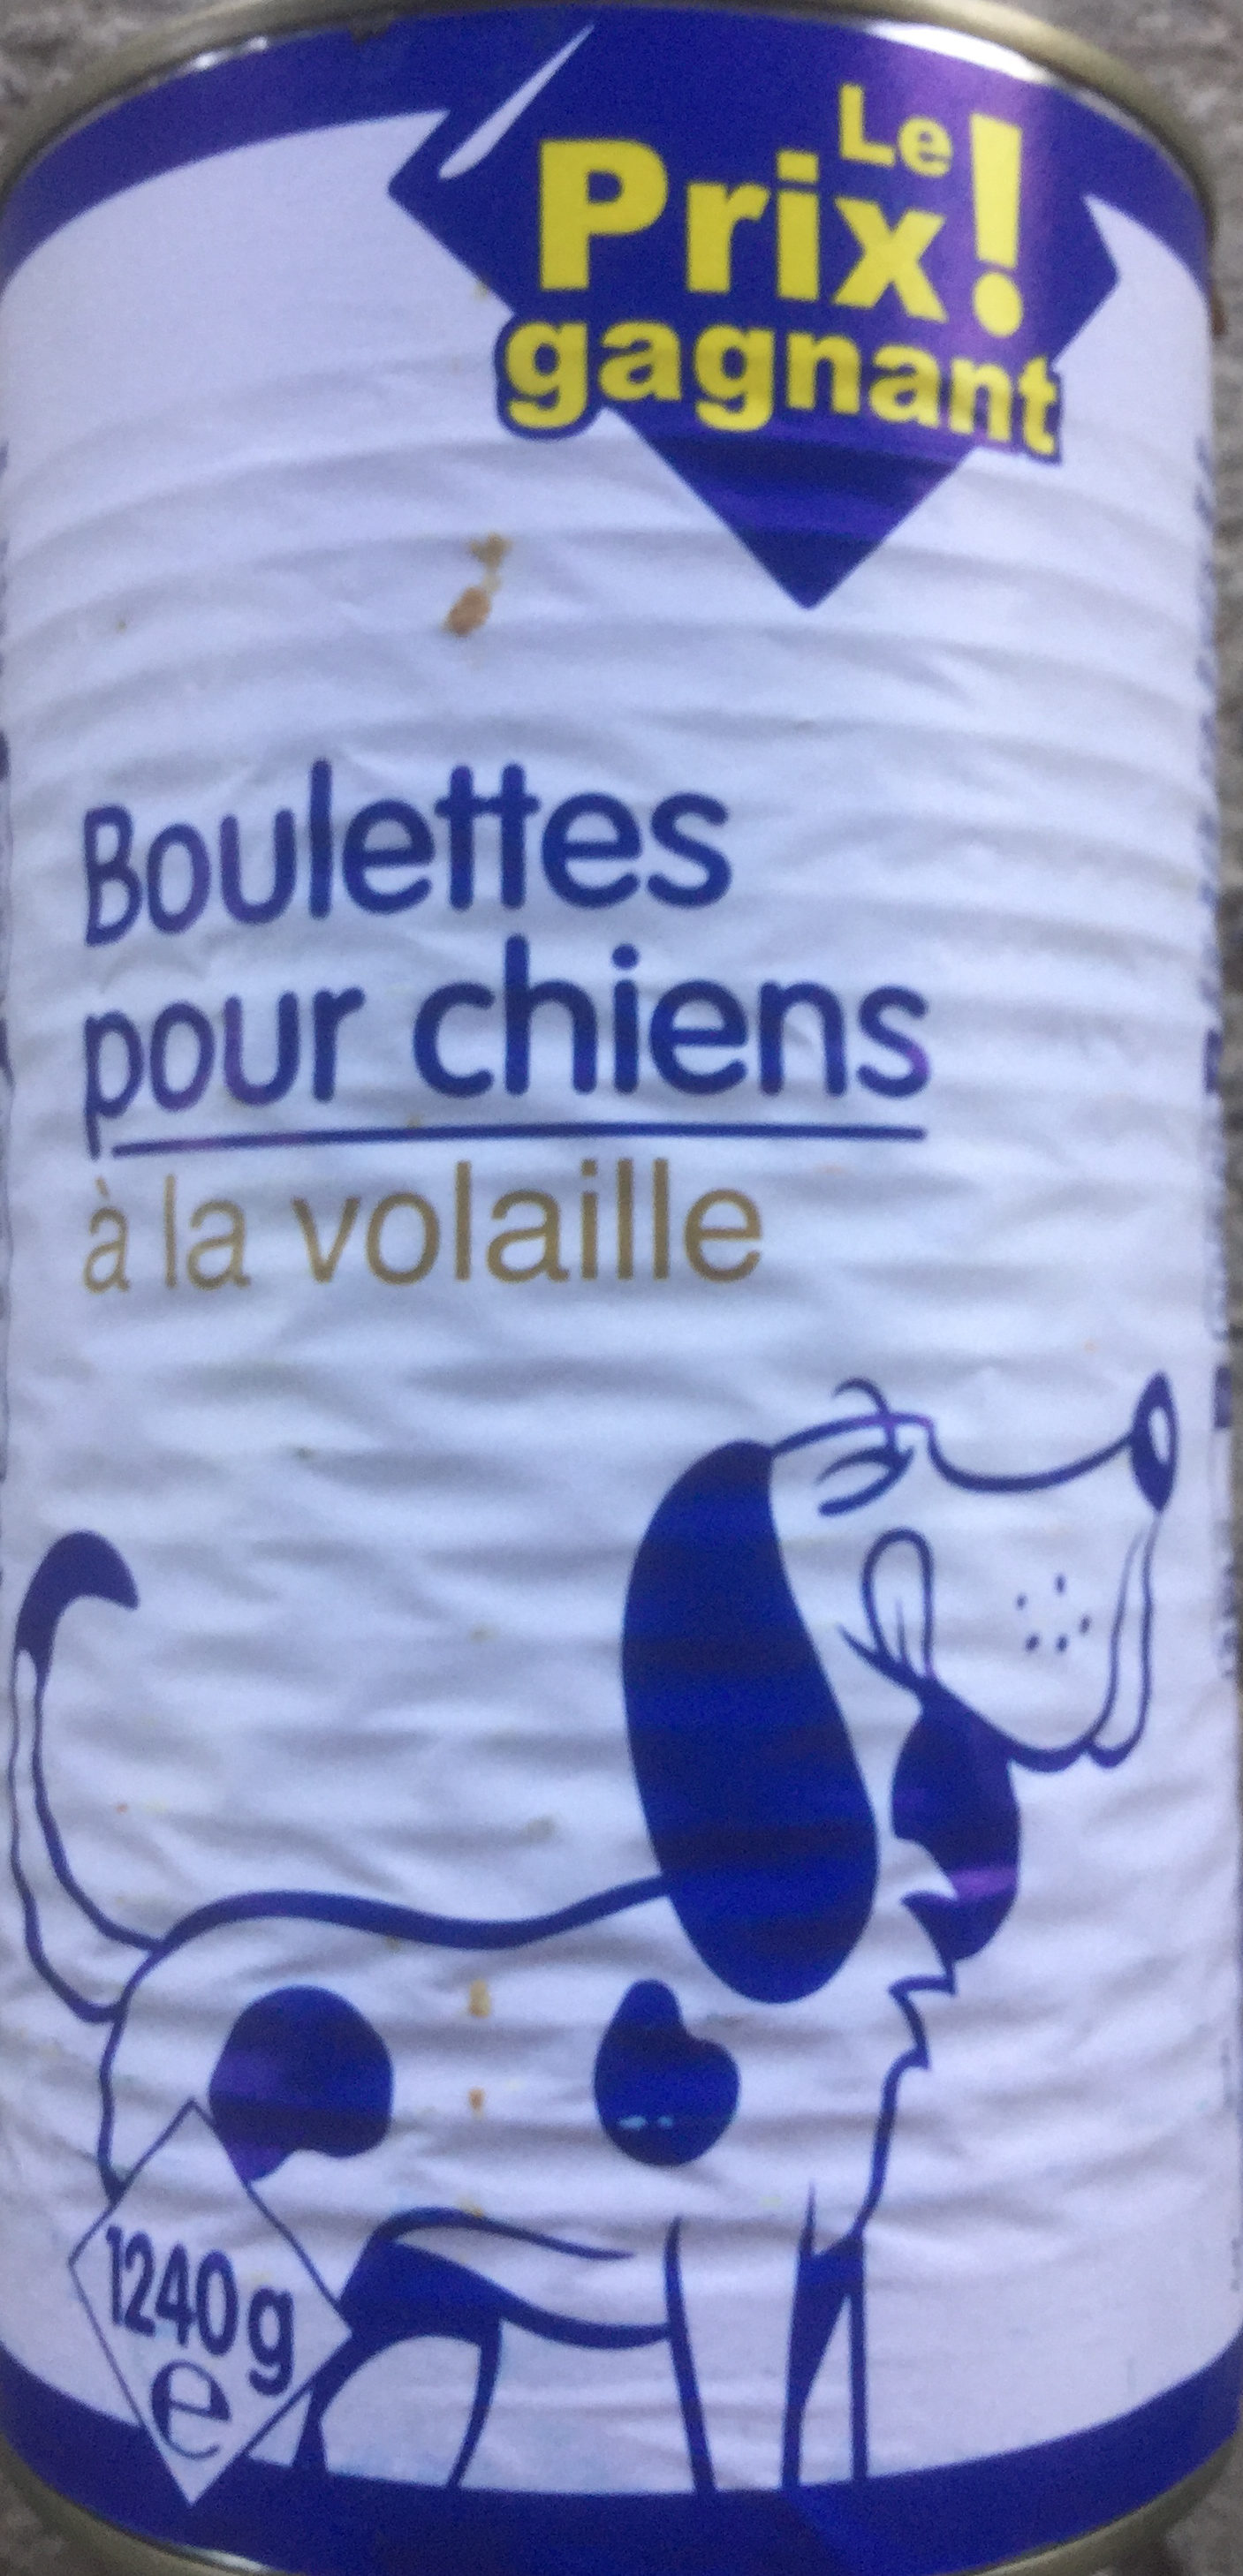 Boulettes pour chiens à la volaille - Produit - fr